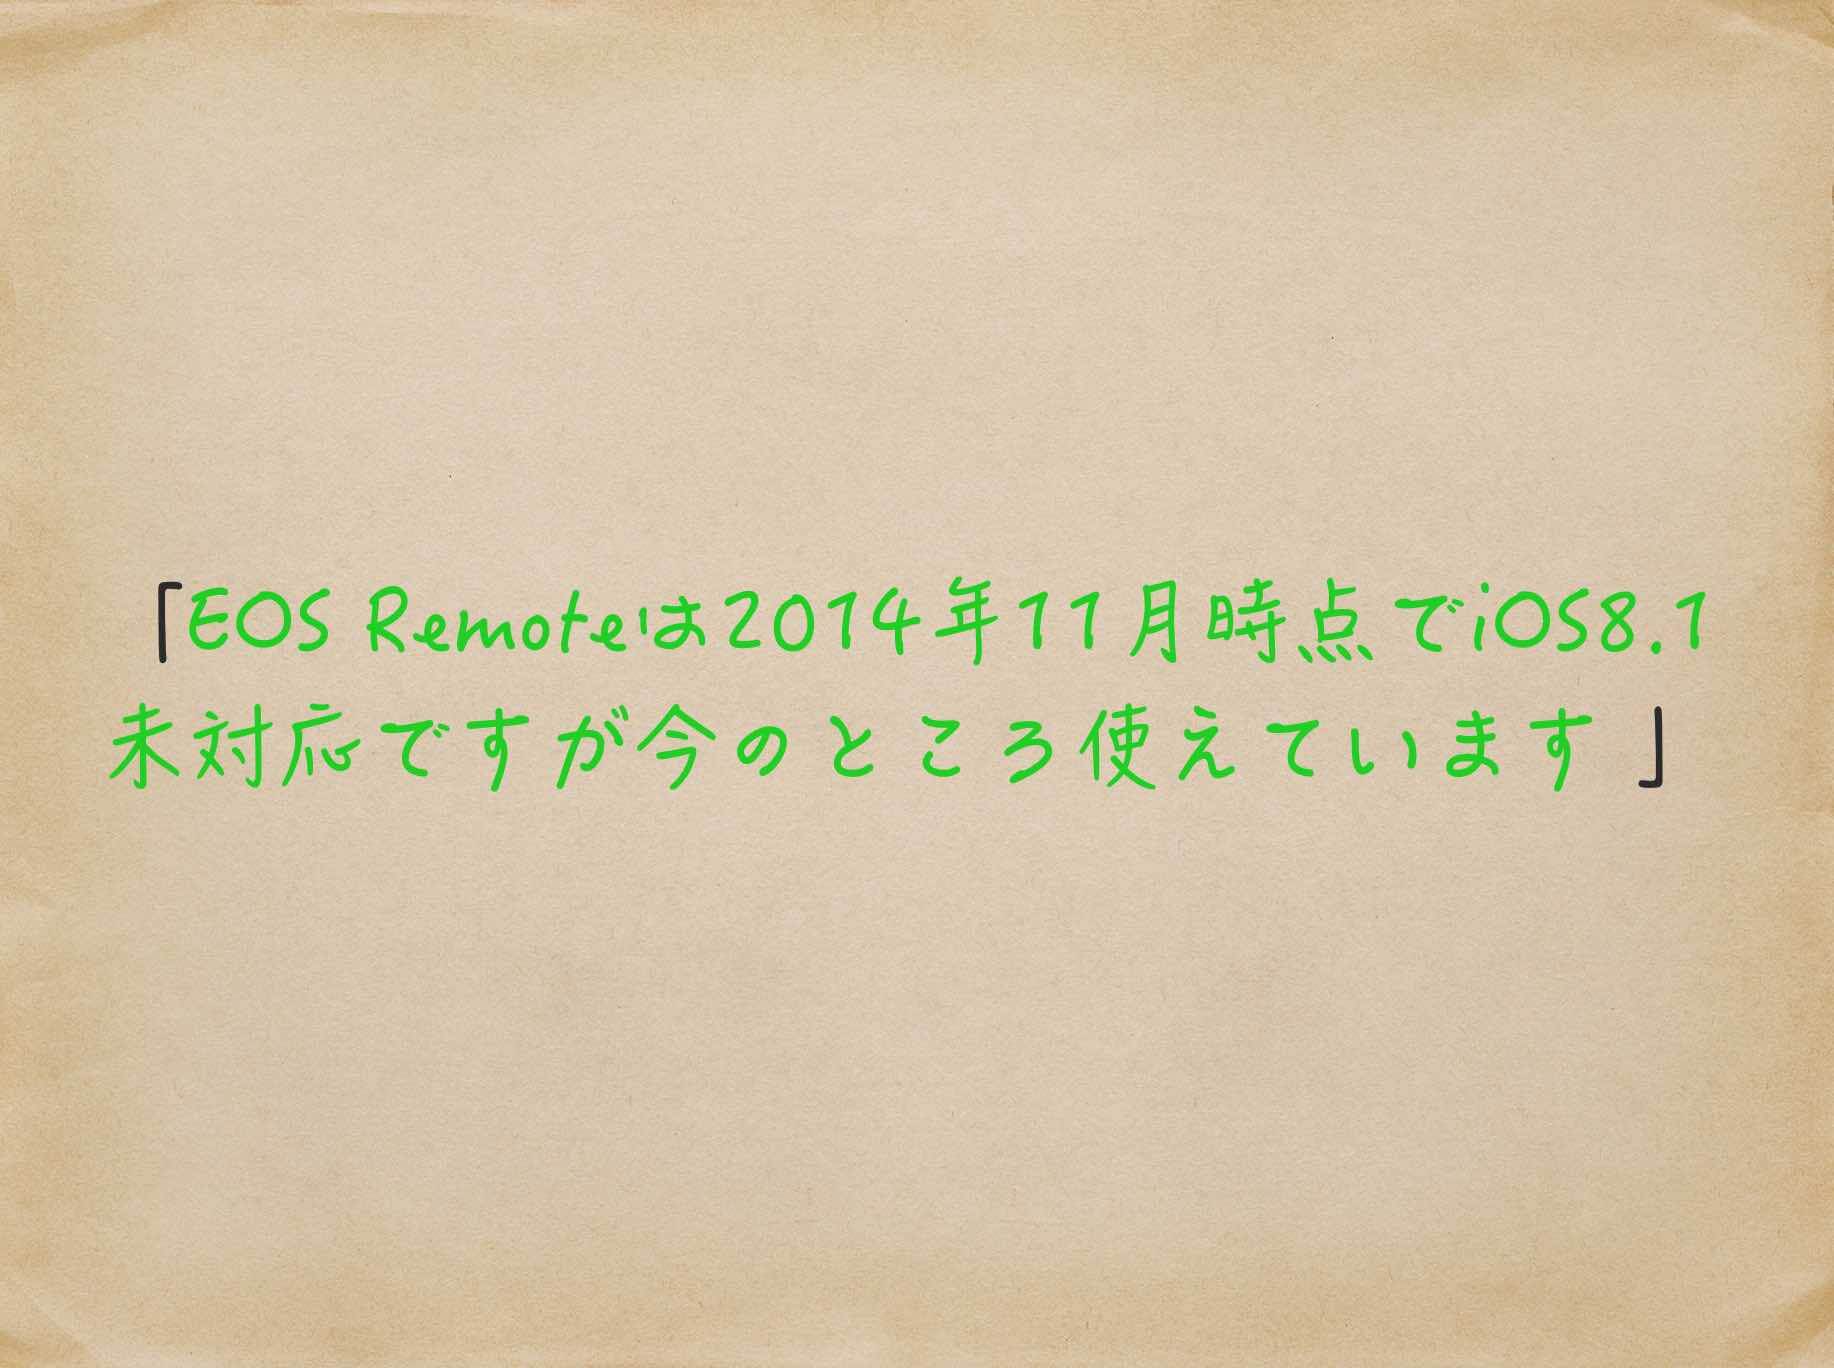 EOS Remoteは2014年11月時点でiOS8.1未対応ですが今のところ使えています